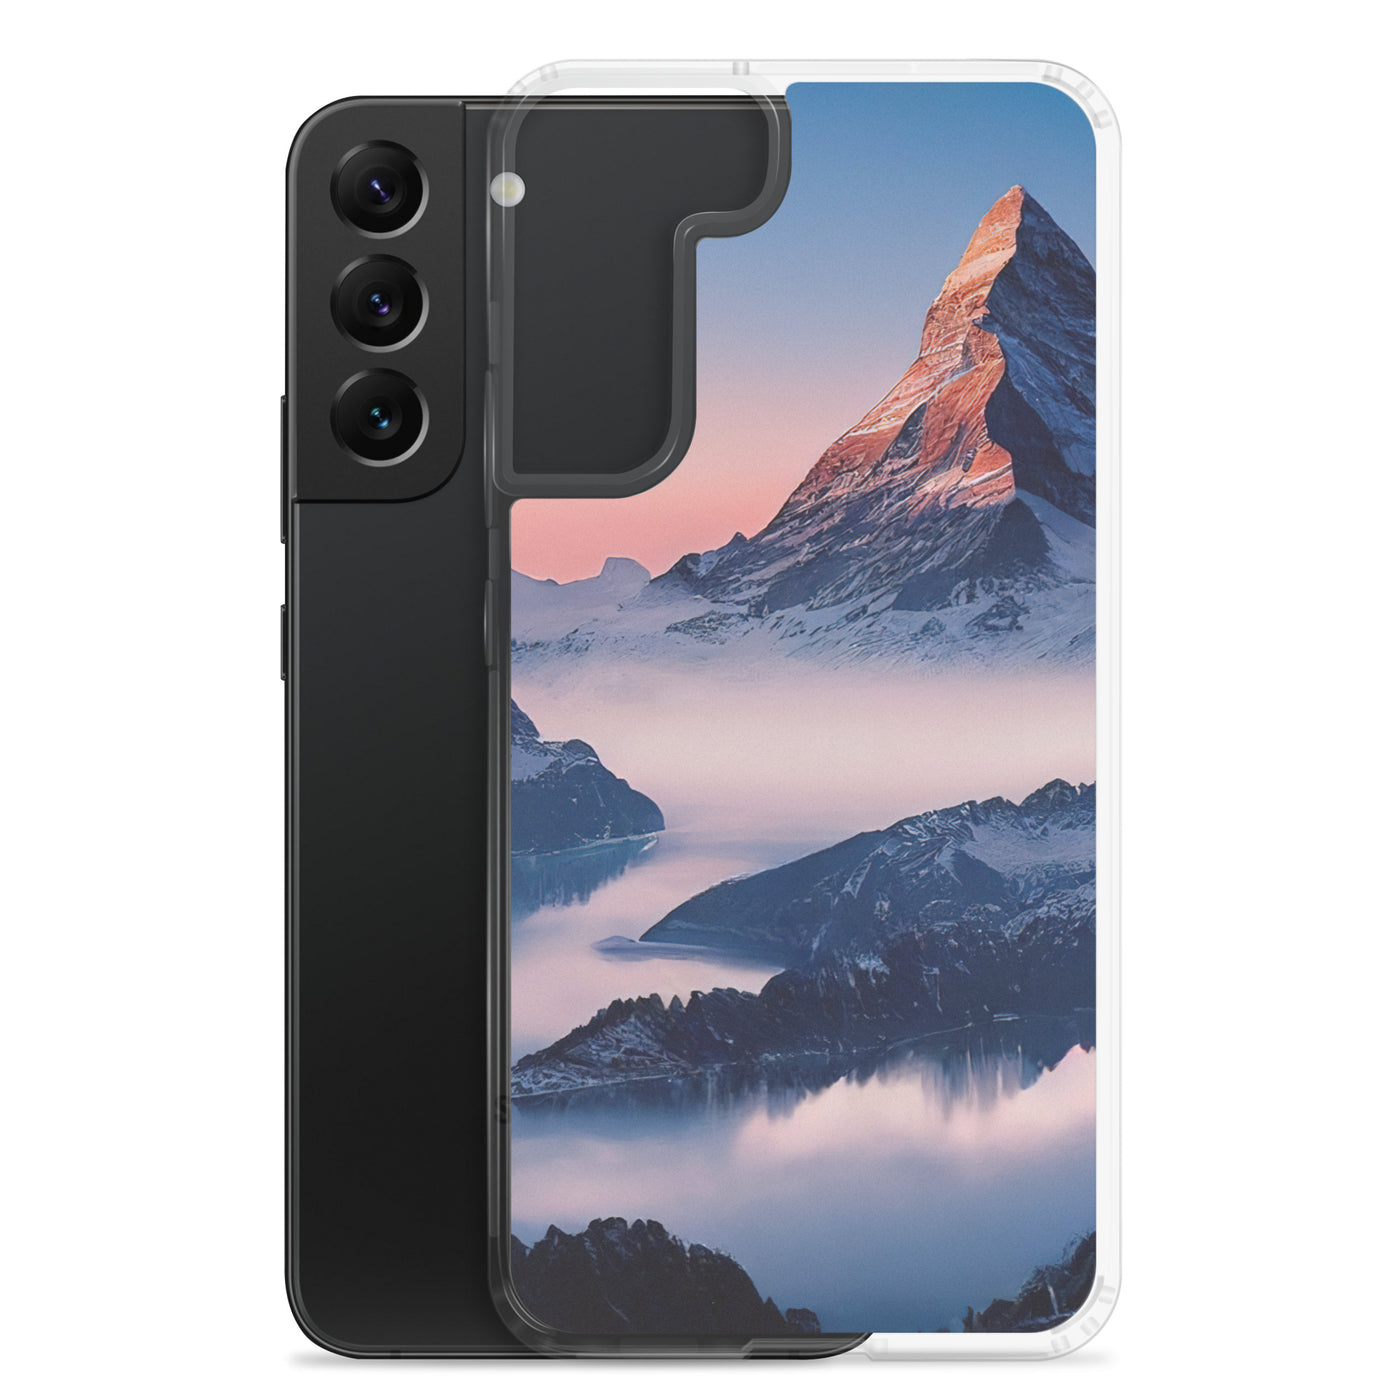 Matternhorn - Nebel - Berglandschaft - Malerei - Samsung Schutzhülle (durchsichtig) berge xxx